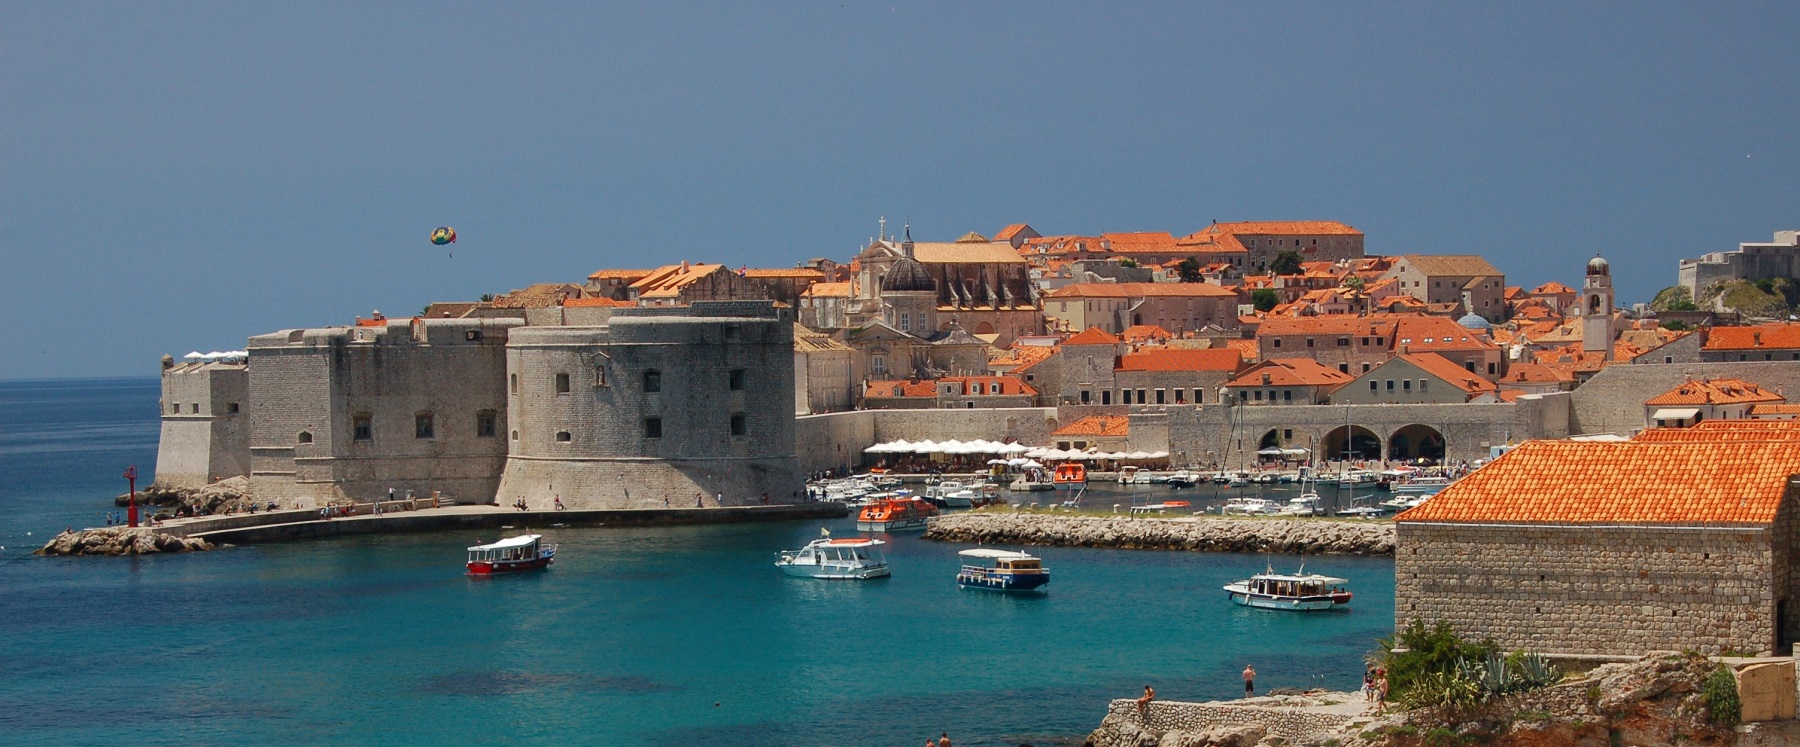 Dubrovnik mure